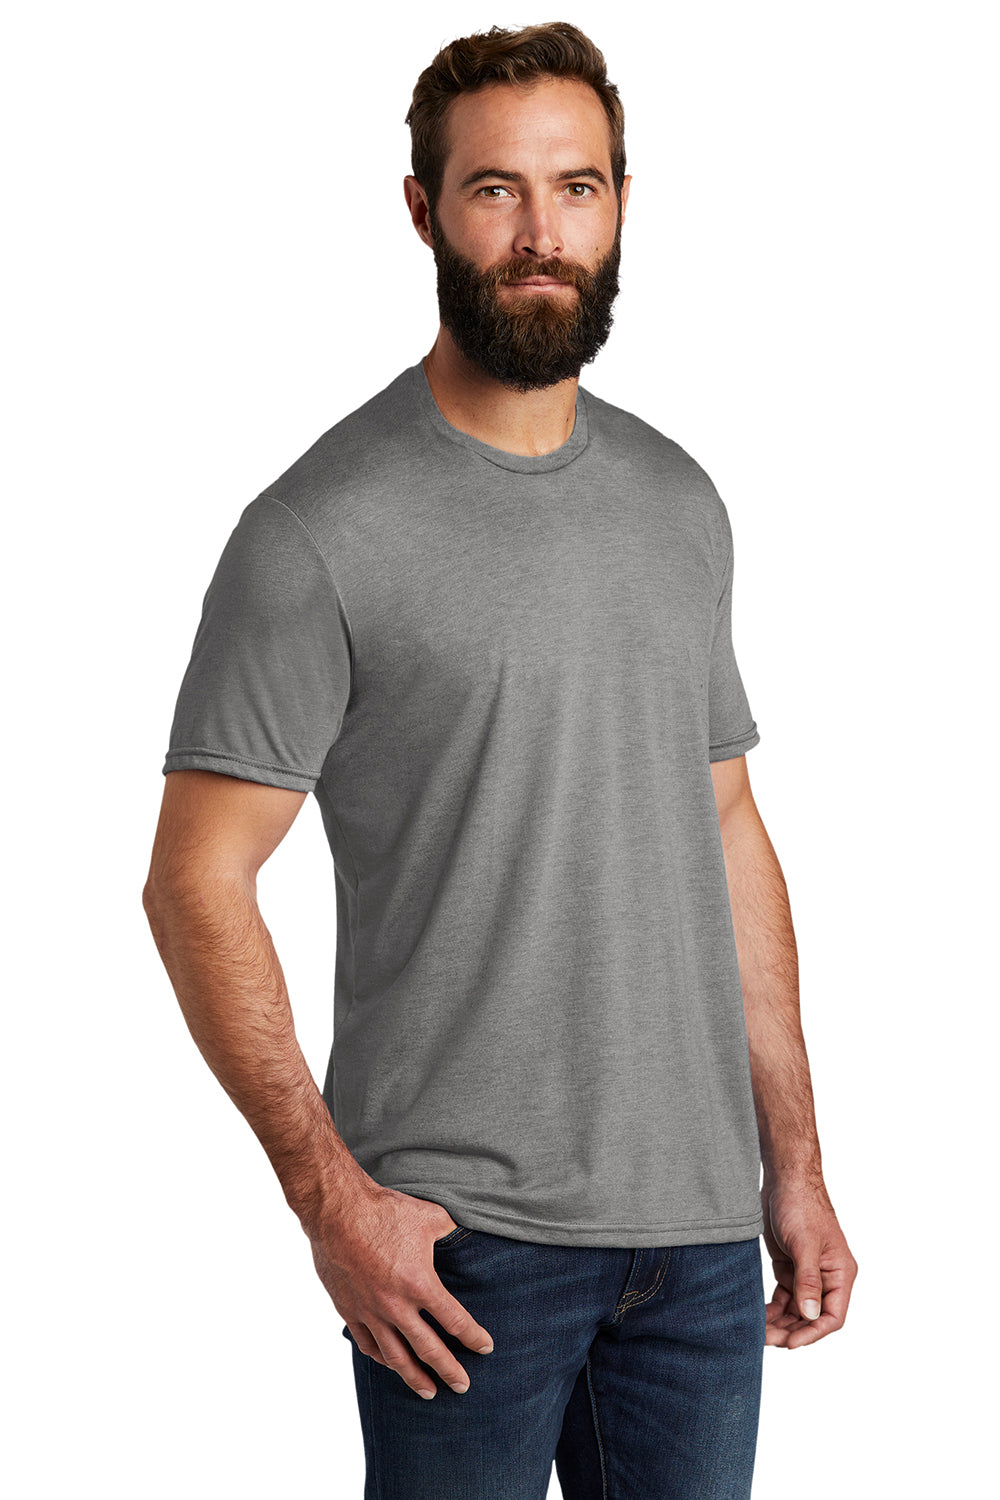 Allmade AL2004 Mens Short Sleeve Crewneck T-Shirt Aluminum Grey Model 3Q